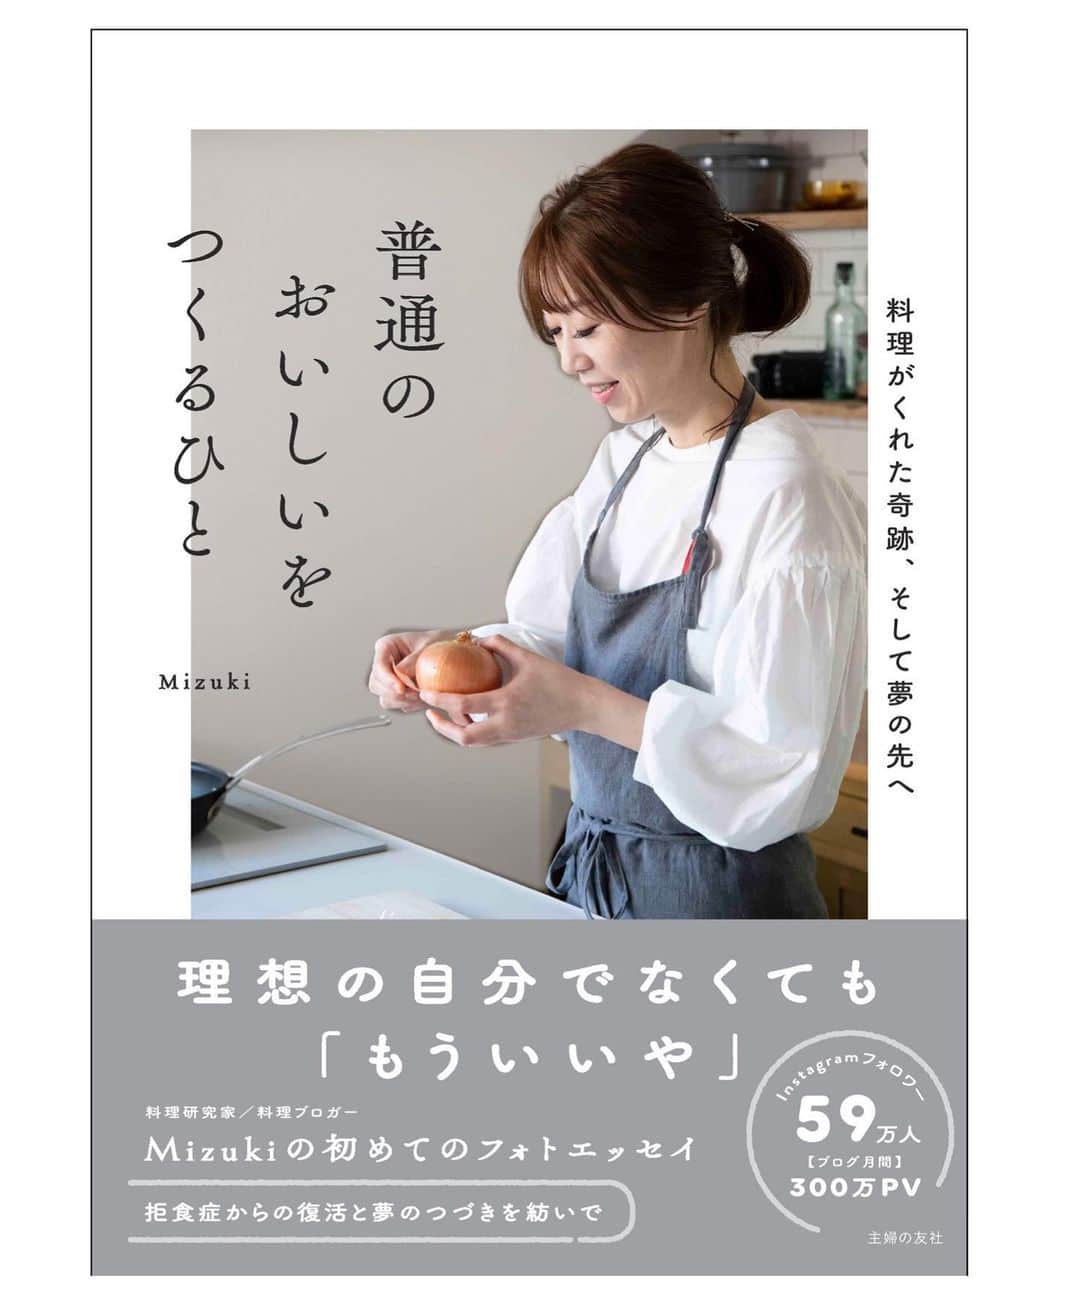 Mizuki【料理ブロガー・簡単レシピ】さんのインスタグラム写真 - (Mizuki【料理ブロガー・簡単レシピ】Instagram)「・﻿ 【#レシピ 】ーーーーーーーーーー﻿ 漬けて焼くだけ！ローストチキン﻿ ーーーーーーーーーーーーーーーー﻿ ﻿ ﻿ ﻿ おはようございます(*^^*)﻿ ﻿ 今日はクリスマスにもおすすめの﻿ \\ #ローストチキン //﻿ ﻿ 醤油ベースのたれに﻿ オイスターソースを加えてコクアップ♩﻿ 漬けて焼くだけ！！﻿ 難しいこと一切なしの﻿ 超〜簡単レシピです(*´艸`)﻿ ﻿ 下味冷凍もできるので﻿ よかったらお試し下さいね(*^^*)﻿ ﻿ ﻿ ﻿ ＿＿＿＿＿＿＿＿＿＿＿＿＿＿＿＿＿＿＿＿﻿ 【作りやすい量】﻿ 手羽元...10本﻿ ●醤油...大2﻿ ●酒...大1﻿ ●みりん・オイスターソース...各大1/2﻿ ●にんにくチューブ...2cm﻿ ﻿ 1.ポリ袋に手羽と●を入れて揉み込み、冷蔵庫で1時間以上漬ける。﻿ 2.汁気を軽く切り、クッキングシートを敷いた天板に並べ、200度に予熱したオーブンで30分焼く。﻿ (漬けだれは残しておき、焼き上がり5分前に塗るとテリアップ&しっかり味に！)﻿ ￣￣￣￣￣￣￣￣￣￣￣￣￣￣￣￣￣￣￣￣﻿ ﻿ ﻿ ﻿ 《ポイント》﻿ ♦︎漬けた状態で冷凍可(冷凍作り置き)♩解凍してから焼いて下さい♩﻿ ♦(好みで)手羽に切り込みを入れておくと、短時間で中まで味が染みます♩﻿ ﻿ ﻿ ﻿ ﻿ ﻿ ﻿ ﻿ ﻿ 📕新刊予約開始しました📕﻿ 【ラクしておいしい！#1品晩ごはん 】﻿ ￣￣￣￣￣￣￣￣￣￣￣￣￣￣￣￣￣﻿ 私たちだってヘトヘトな日がある•••﻿ 毎日何品も作っていられない•••﻿ もうごはんに悩みたくない😢﻿ そう思うことってありませんか？﻿ そんな時、1品ごはんはいかがでしょう？﻿ というご提案です✨﻿ ﻿ ﻿ 【1品ごはん】は﻿ 副菜いらずで全てがシンプル！﻿ ￣￣￣￣￣￣￣￣￣￣￣￣￣￣￣￣￣￣﻿ 一品つくるだけでいいから﻿ 献立を考えなくてよし！﻿ ￣￣￣￣￣￣￣￣￣￣￣￣￣￣￣￣￣￣﻿ 悩まない、疲れない、﻿ 気力や時間がなくてもなんとかなる！﻿ ￣￣￣￣￣￣￣￣￣￣￣￣￣￣￣￣￣￣﻿ そんな頼りになる﻿ 便利なお助けごはんです☺️💕﻿ (ハイライトに🔗貼っています✨)﻿ ￣￣￣￣￣￣￣￣￣￣￣￣￣￣￣￣￣﻿ ﻿ ﻿ ﻿ ﻿ ﻿ ⭐️発売中⭐️﻿ ＿＿＿＿＿＿＿＿＿＿＿＿＿＿＿＿＿＿﻿ しんどくない献立、考えました♩﻿ \15分でいただきます/﻿ 📕#Mizukiの2品献立 📕﻿ ﻿ 和食をもっとカジュアルに♩﻿ \毎日のごはんがラクになる/﻿ 📘#Mizukiの今どき和食 📘﻿ ﻿ ホケミレシピの決定版♩﻿ \はじめてでも失敗しない/﻿ 📙ホットケーキミックスのお菓子 📙﻿ ﻿ NHKまる得マガジンテキスト☆﻿ ホットケーキミックスで﻿ 📗絶品おやつ&意外なランチ📗﻿ ￣￣￣￣￣￣￣￣￣￣￣￣￣￣￣￣￣￣﻿ ﻿ ﻿ ﻿ ＿＿＿＿＿＿＿＿＿＿＿＿＿＿＿＿＿＿﻿ レシピを作って下さった際や﻿ レシピ本についてのご投稿には﻿ タグ付け( @mizuki_31cafe )して﻿ お知らせいただけると嬉しいです😊💕﻿ ￣￣￣￣￣￣￣￣￣￣￣￣￣￣￣￣￣￣﻿ ﻿ ﻿ ﻿ ﻿ #チキン#クリスマス#手羽元#Mizuki#簡単レシピ#時短レシピ#節約レシピ#料理#フーディーテーブル#マカロニメイト#おうちごはん#デリスタグラマー#料理好きな人と繋がりたい#食べ物#料理記録#おうちごはんlover#写真好きな人と繋がりたい#foodpic#cooking#recipe#lin_stagrammer#foodporn#yummy#f52grams#ローストチキンm」12月19日 7時38分 - mizuki_31cafe